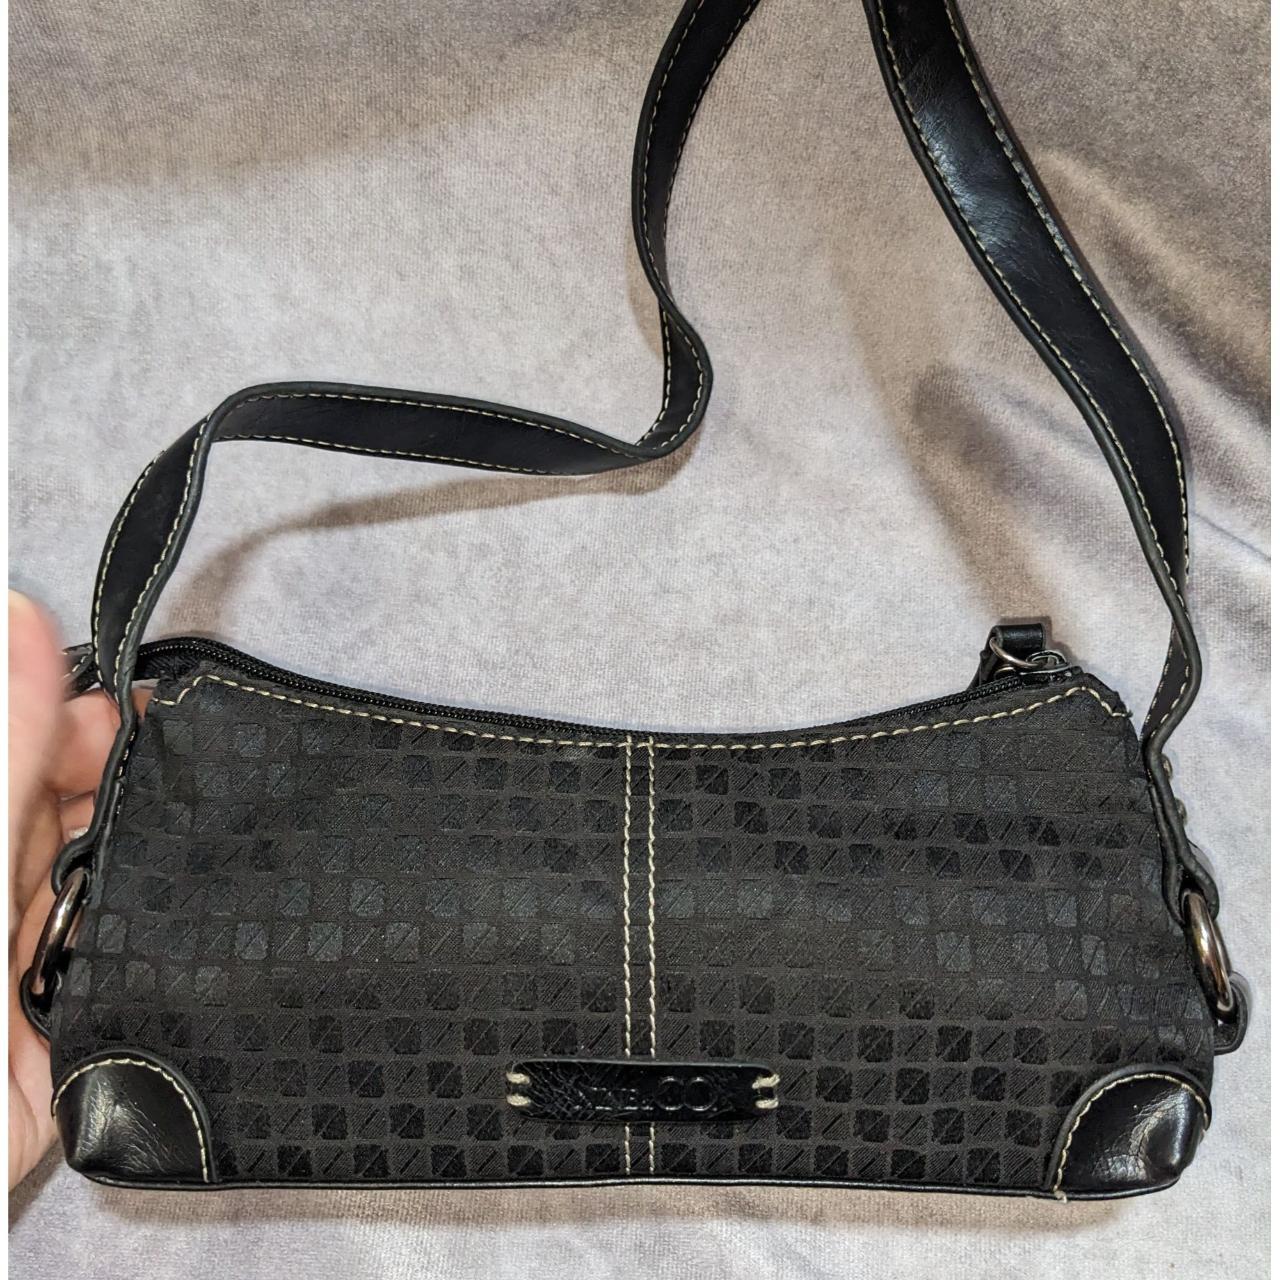 NINE & CO. Black Leather Canvas Purse Shoulder Strap Bag